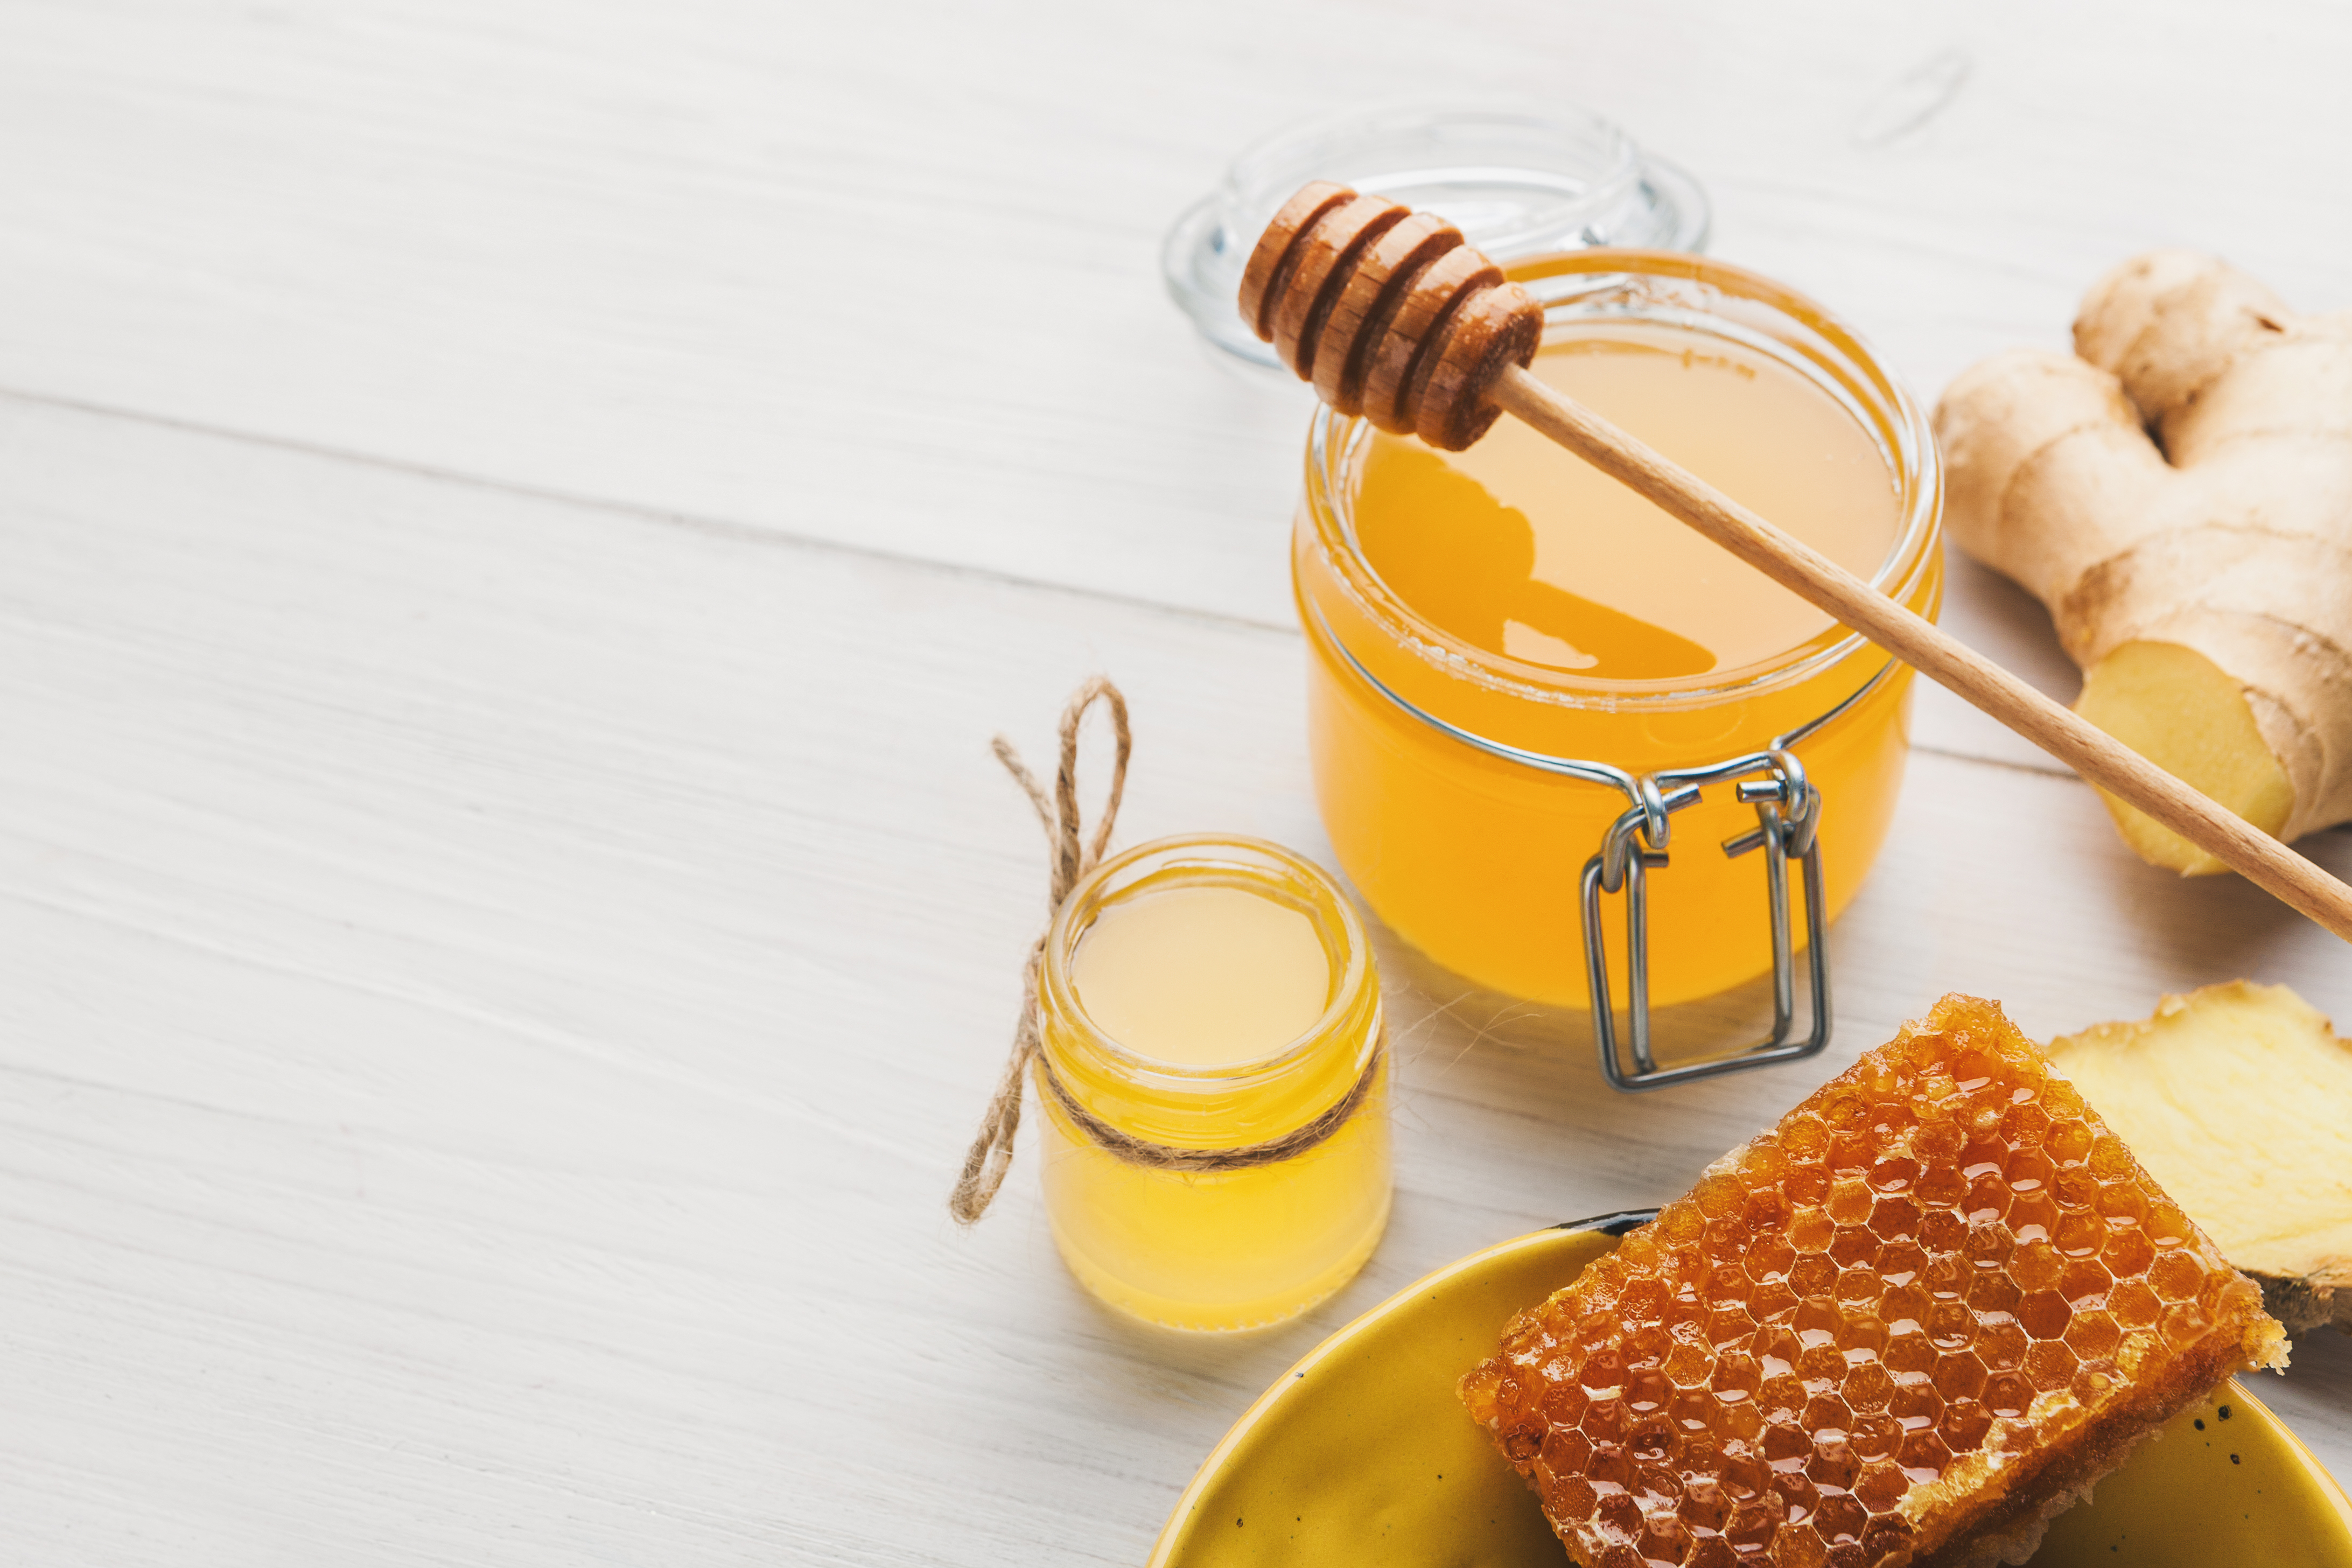 <p><strong>Скраб за суха кожа с мед</strong></p>

<p>Ако искаме да ексфолираме устните си или пък да омекотим сухата кожа по тялото и лактите си, няма по-добро средство от захарния скраб с мед. Медът е същинска козметична суперсъставка, благодарение на своите хидратиращи и антисептични свойства. Захарта (ние препоръчваме да използвате кафява) на свой ред пък механично отстранява мъртвите клетки и оставя кожата мека и гладка. За да приготвите скраба, просто смесете равни части от двете съставки, нанесете на желаното място, изплакнете и се наслаждавайте на сияйния си тен.&nbsp;</p>